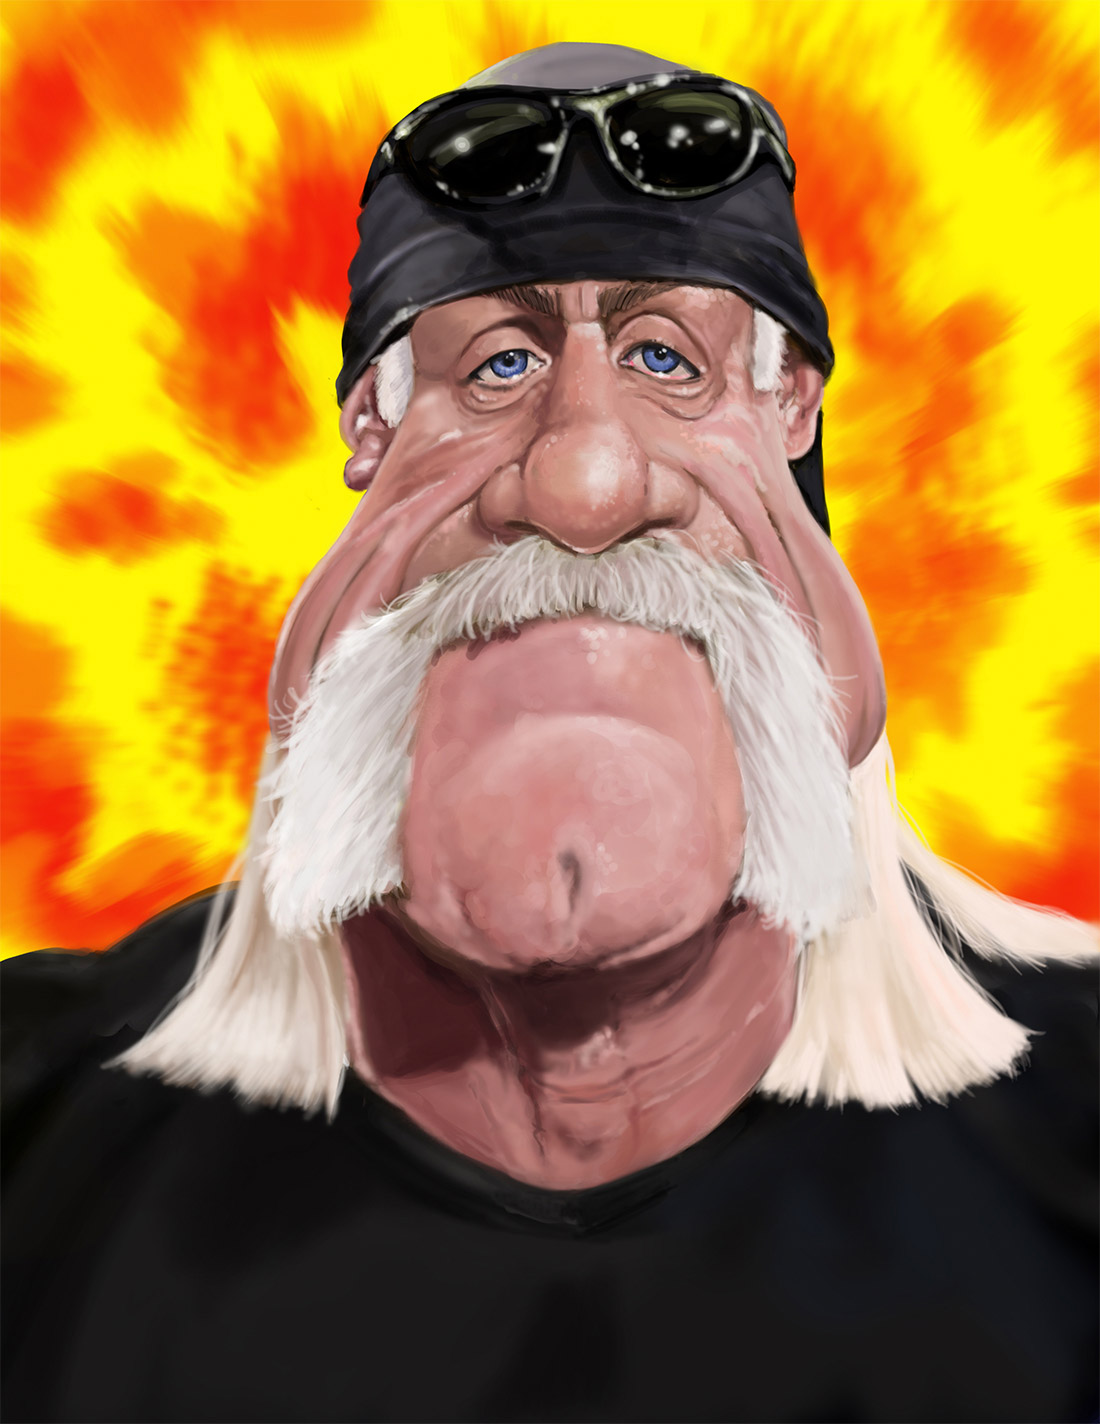 Caricatura de Hulk Hogan